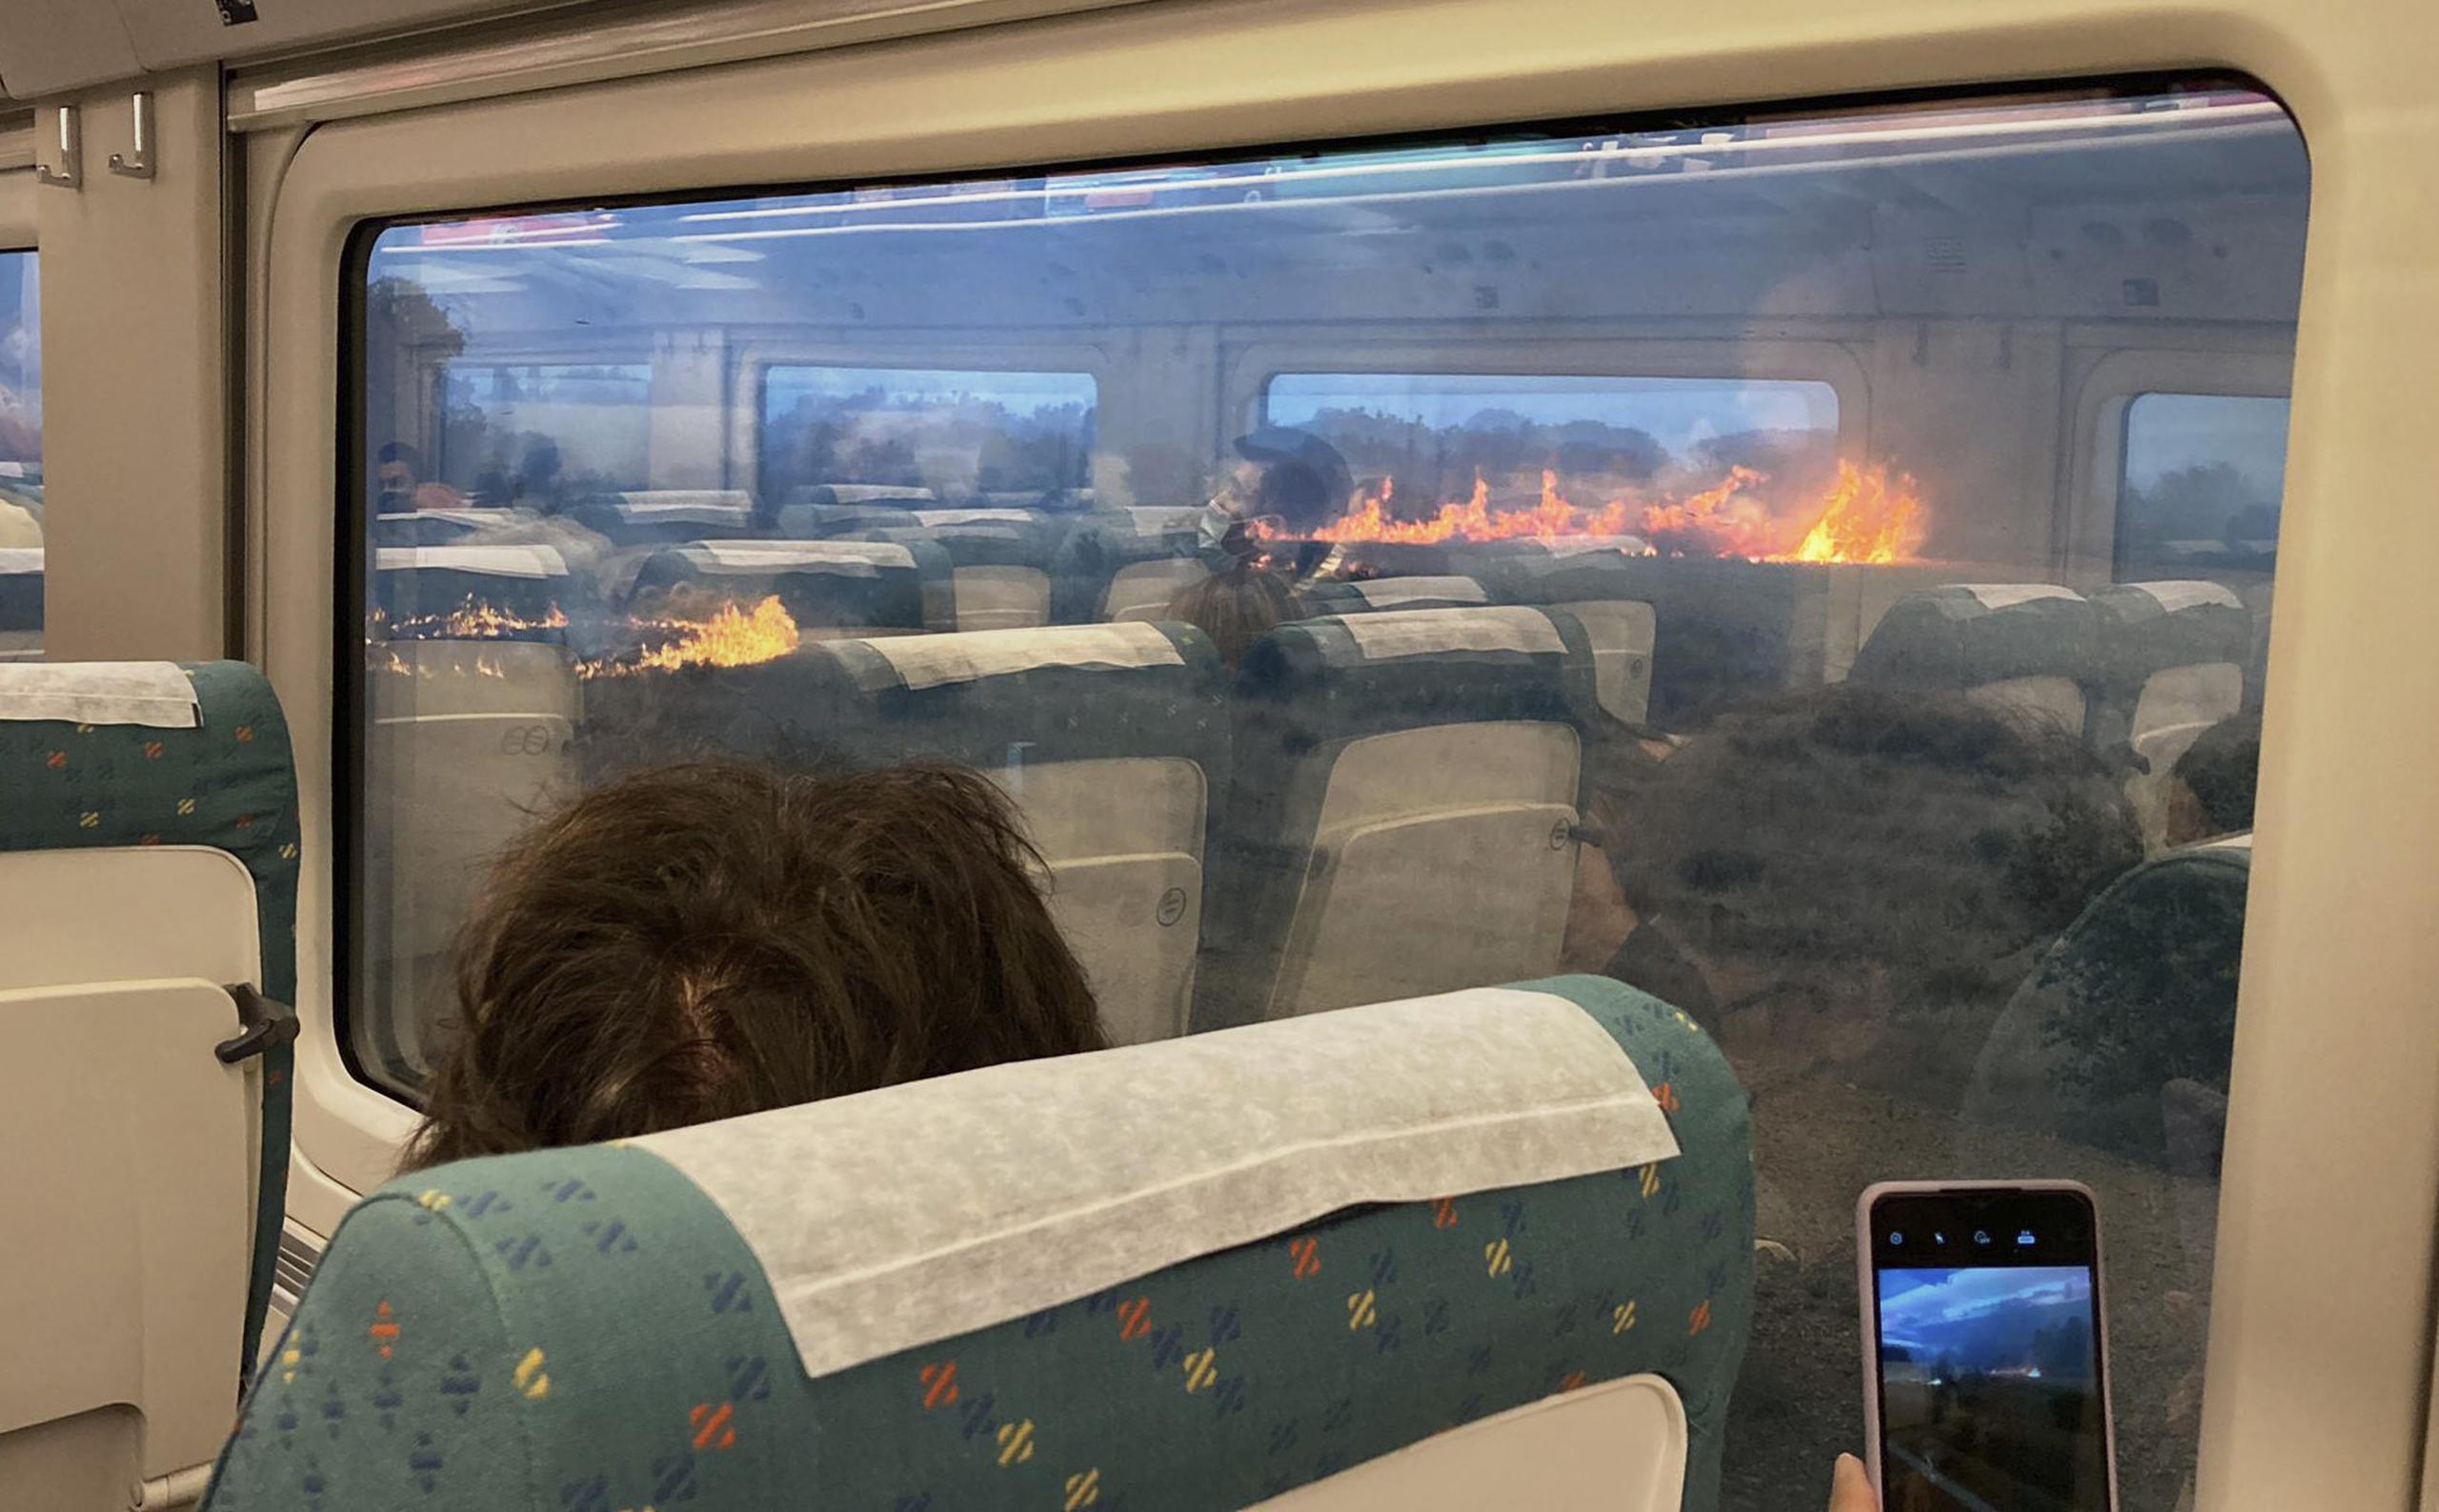 El video de la parada no programada y desconcertante muestra a una docena de pasajeros en el vagón de Seoane alarmados mientras miran por las ventanas.